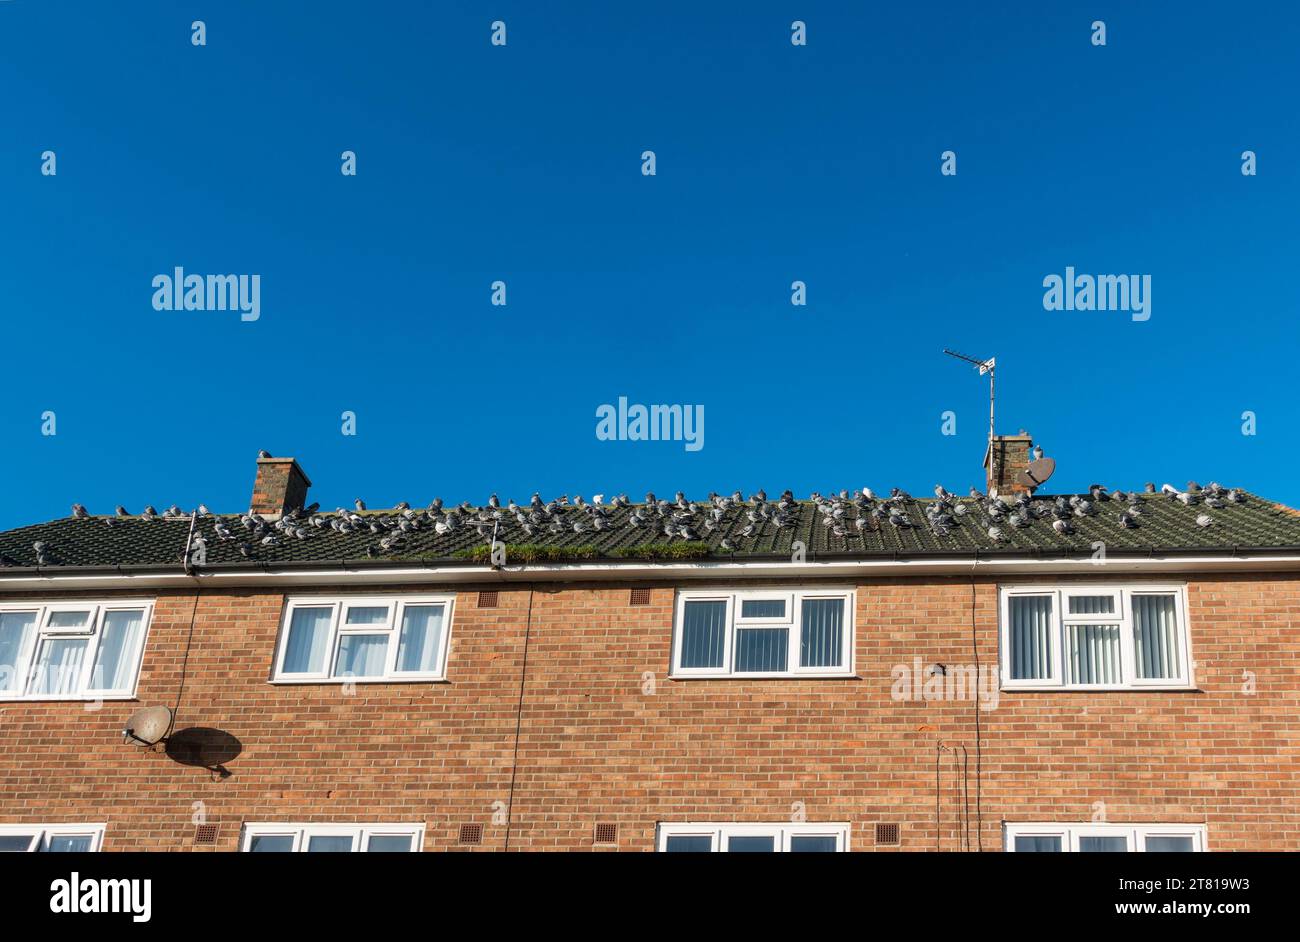 Un gregge di piccioni seduto sul tetto di case a Hartlepool, Inghilterra, Regno Unito Foto Stock